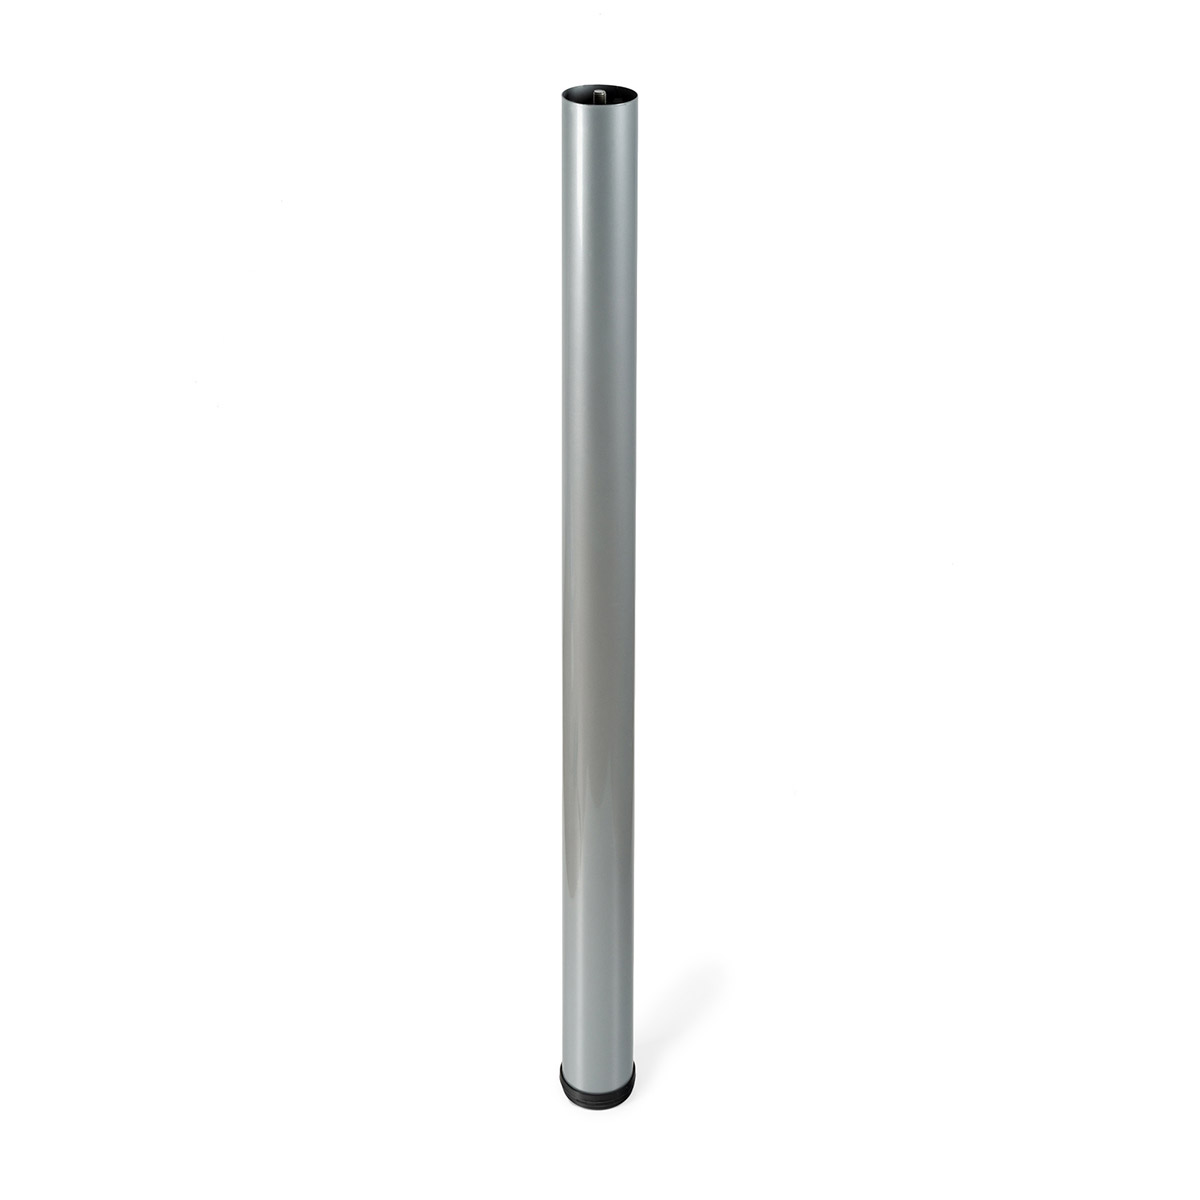 Pata extensible de acero cilíndrica con una altura de hasta 886 mm y  acabada en blanco. Dimensiones: 60x100x866 mm 